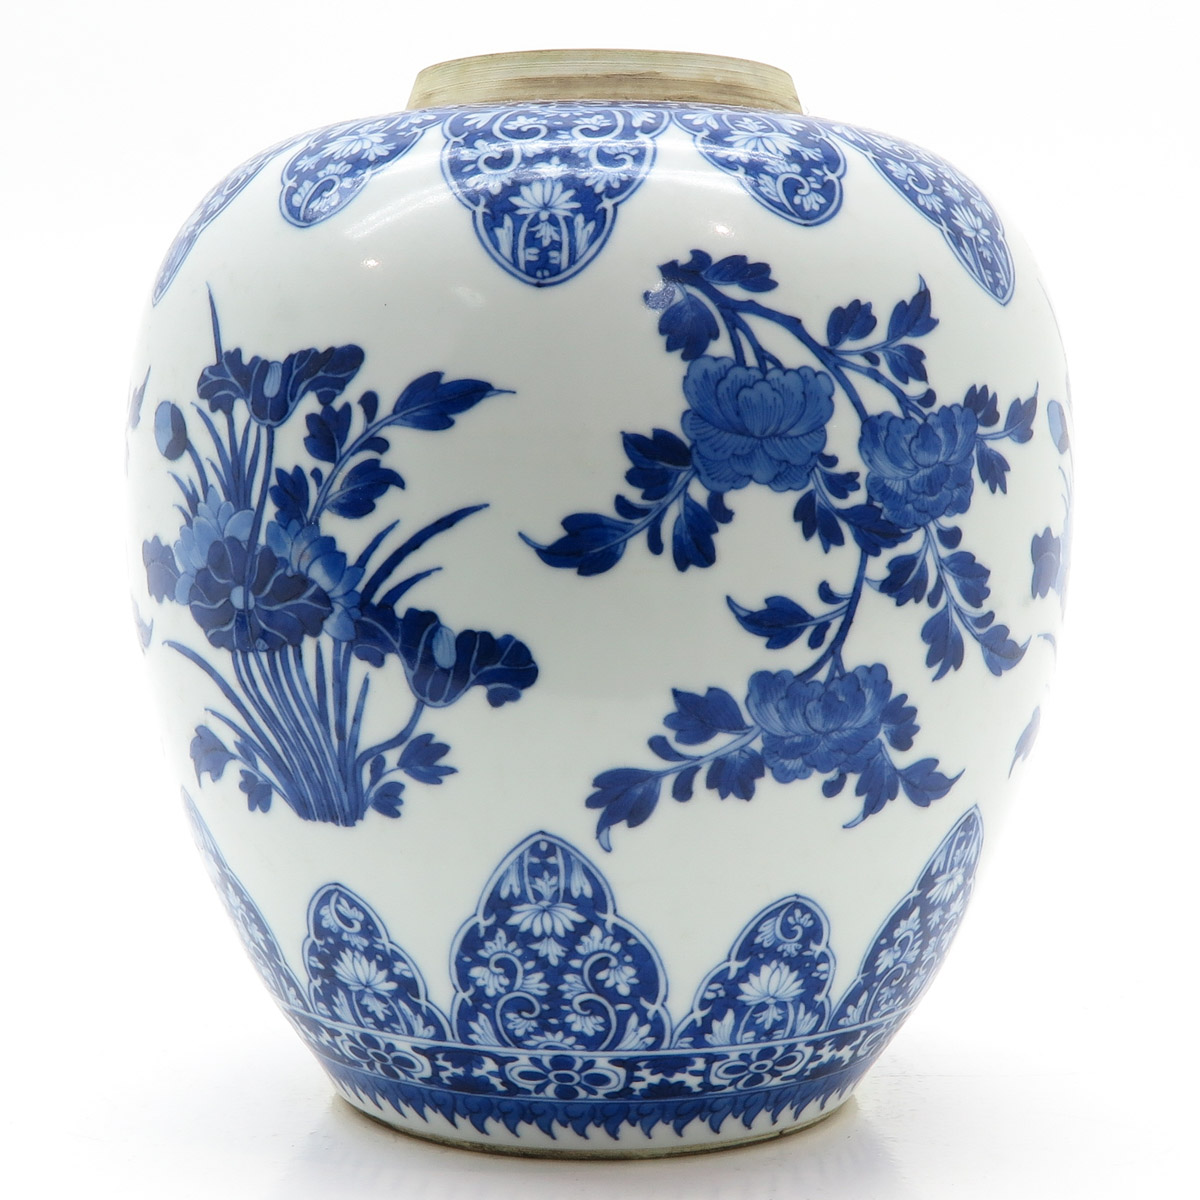 China Porcelain Ginger Jar - Image 4 of 6